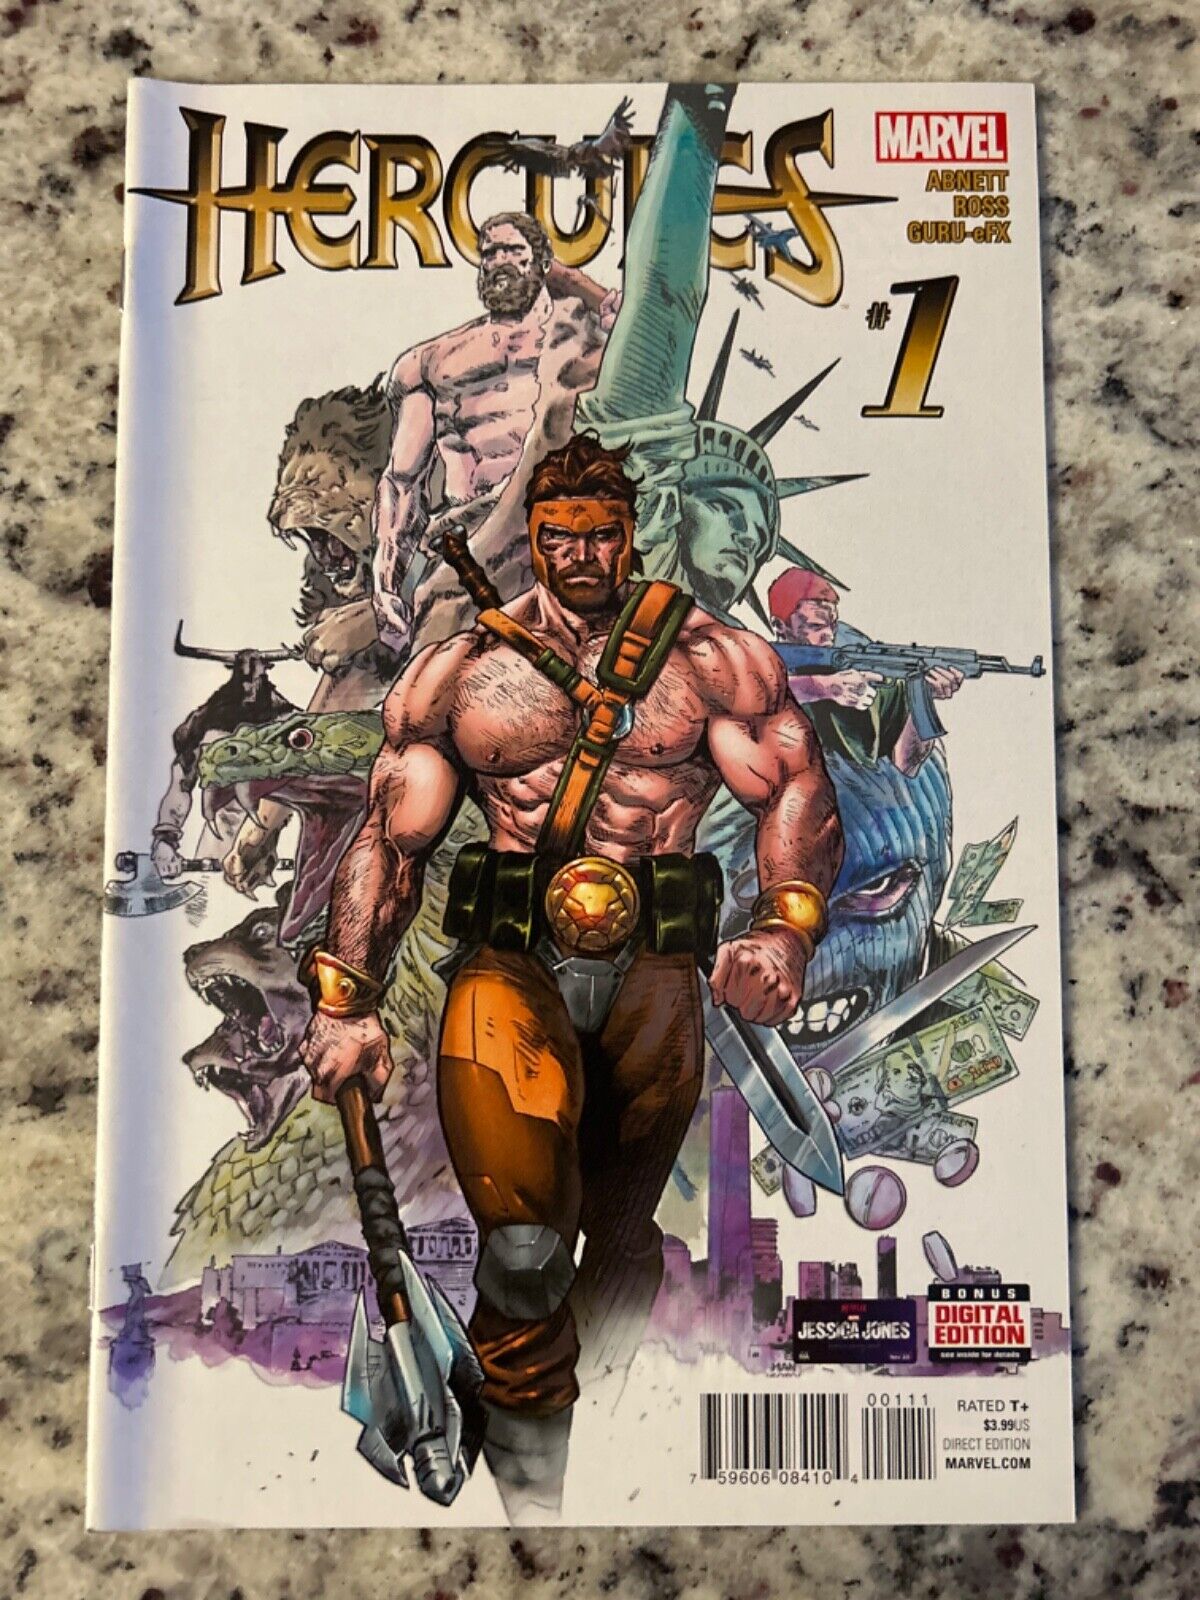 Hercules #1 Vol. 2 (Marvel, 2016) VF